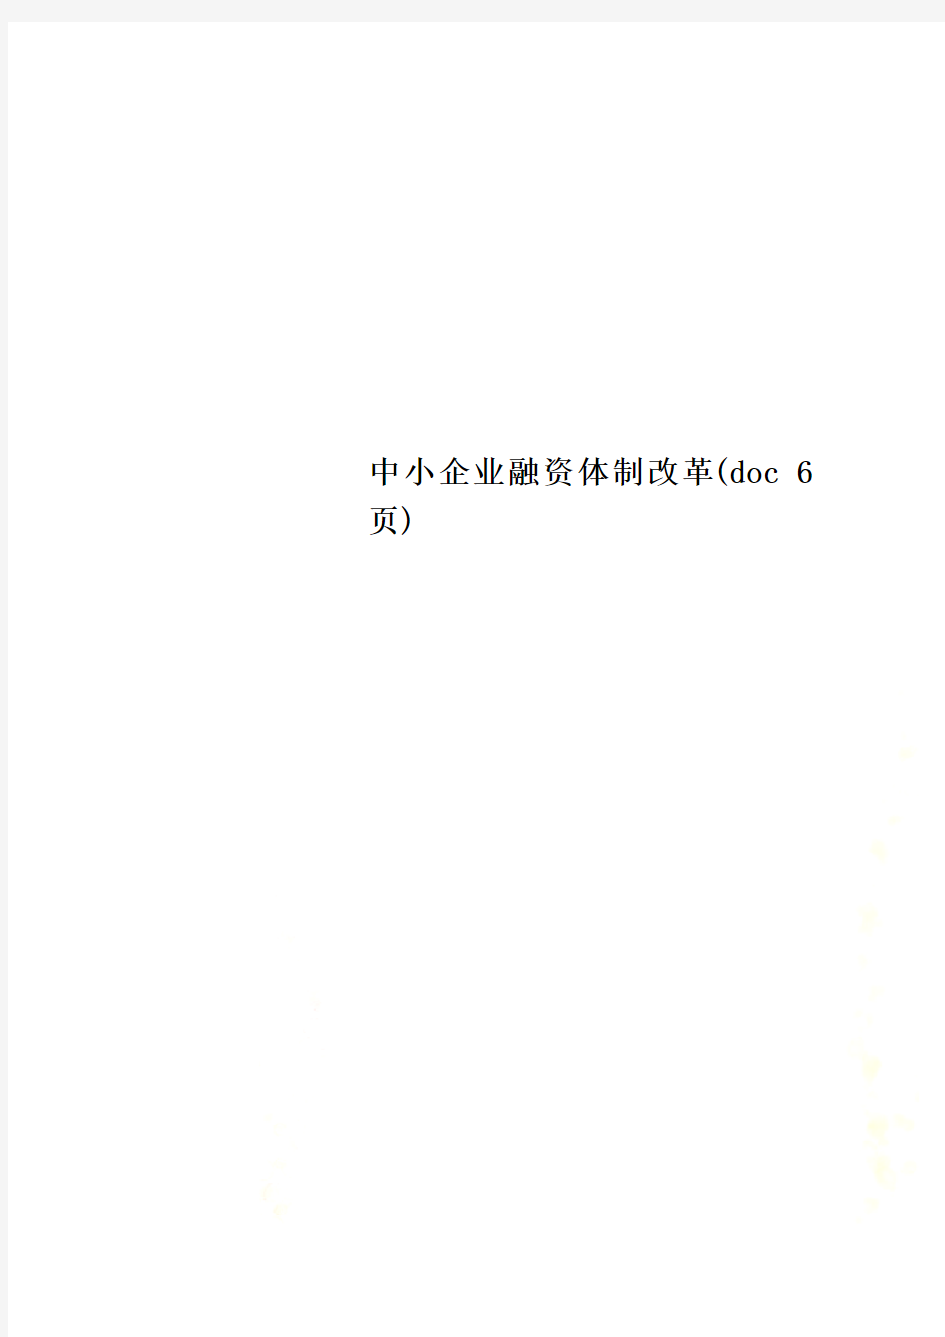 中小企业融资体制改革(doc 6页)